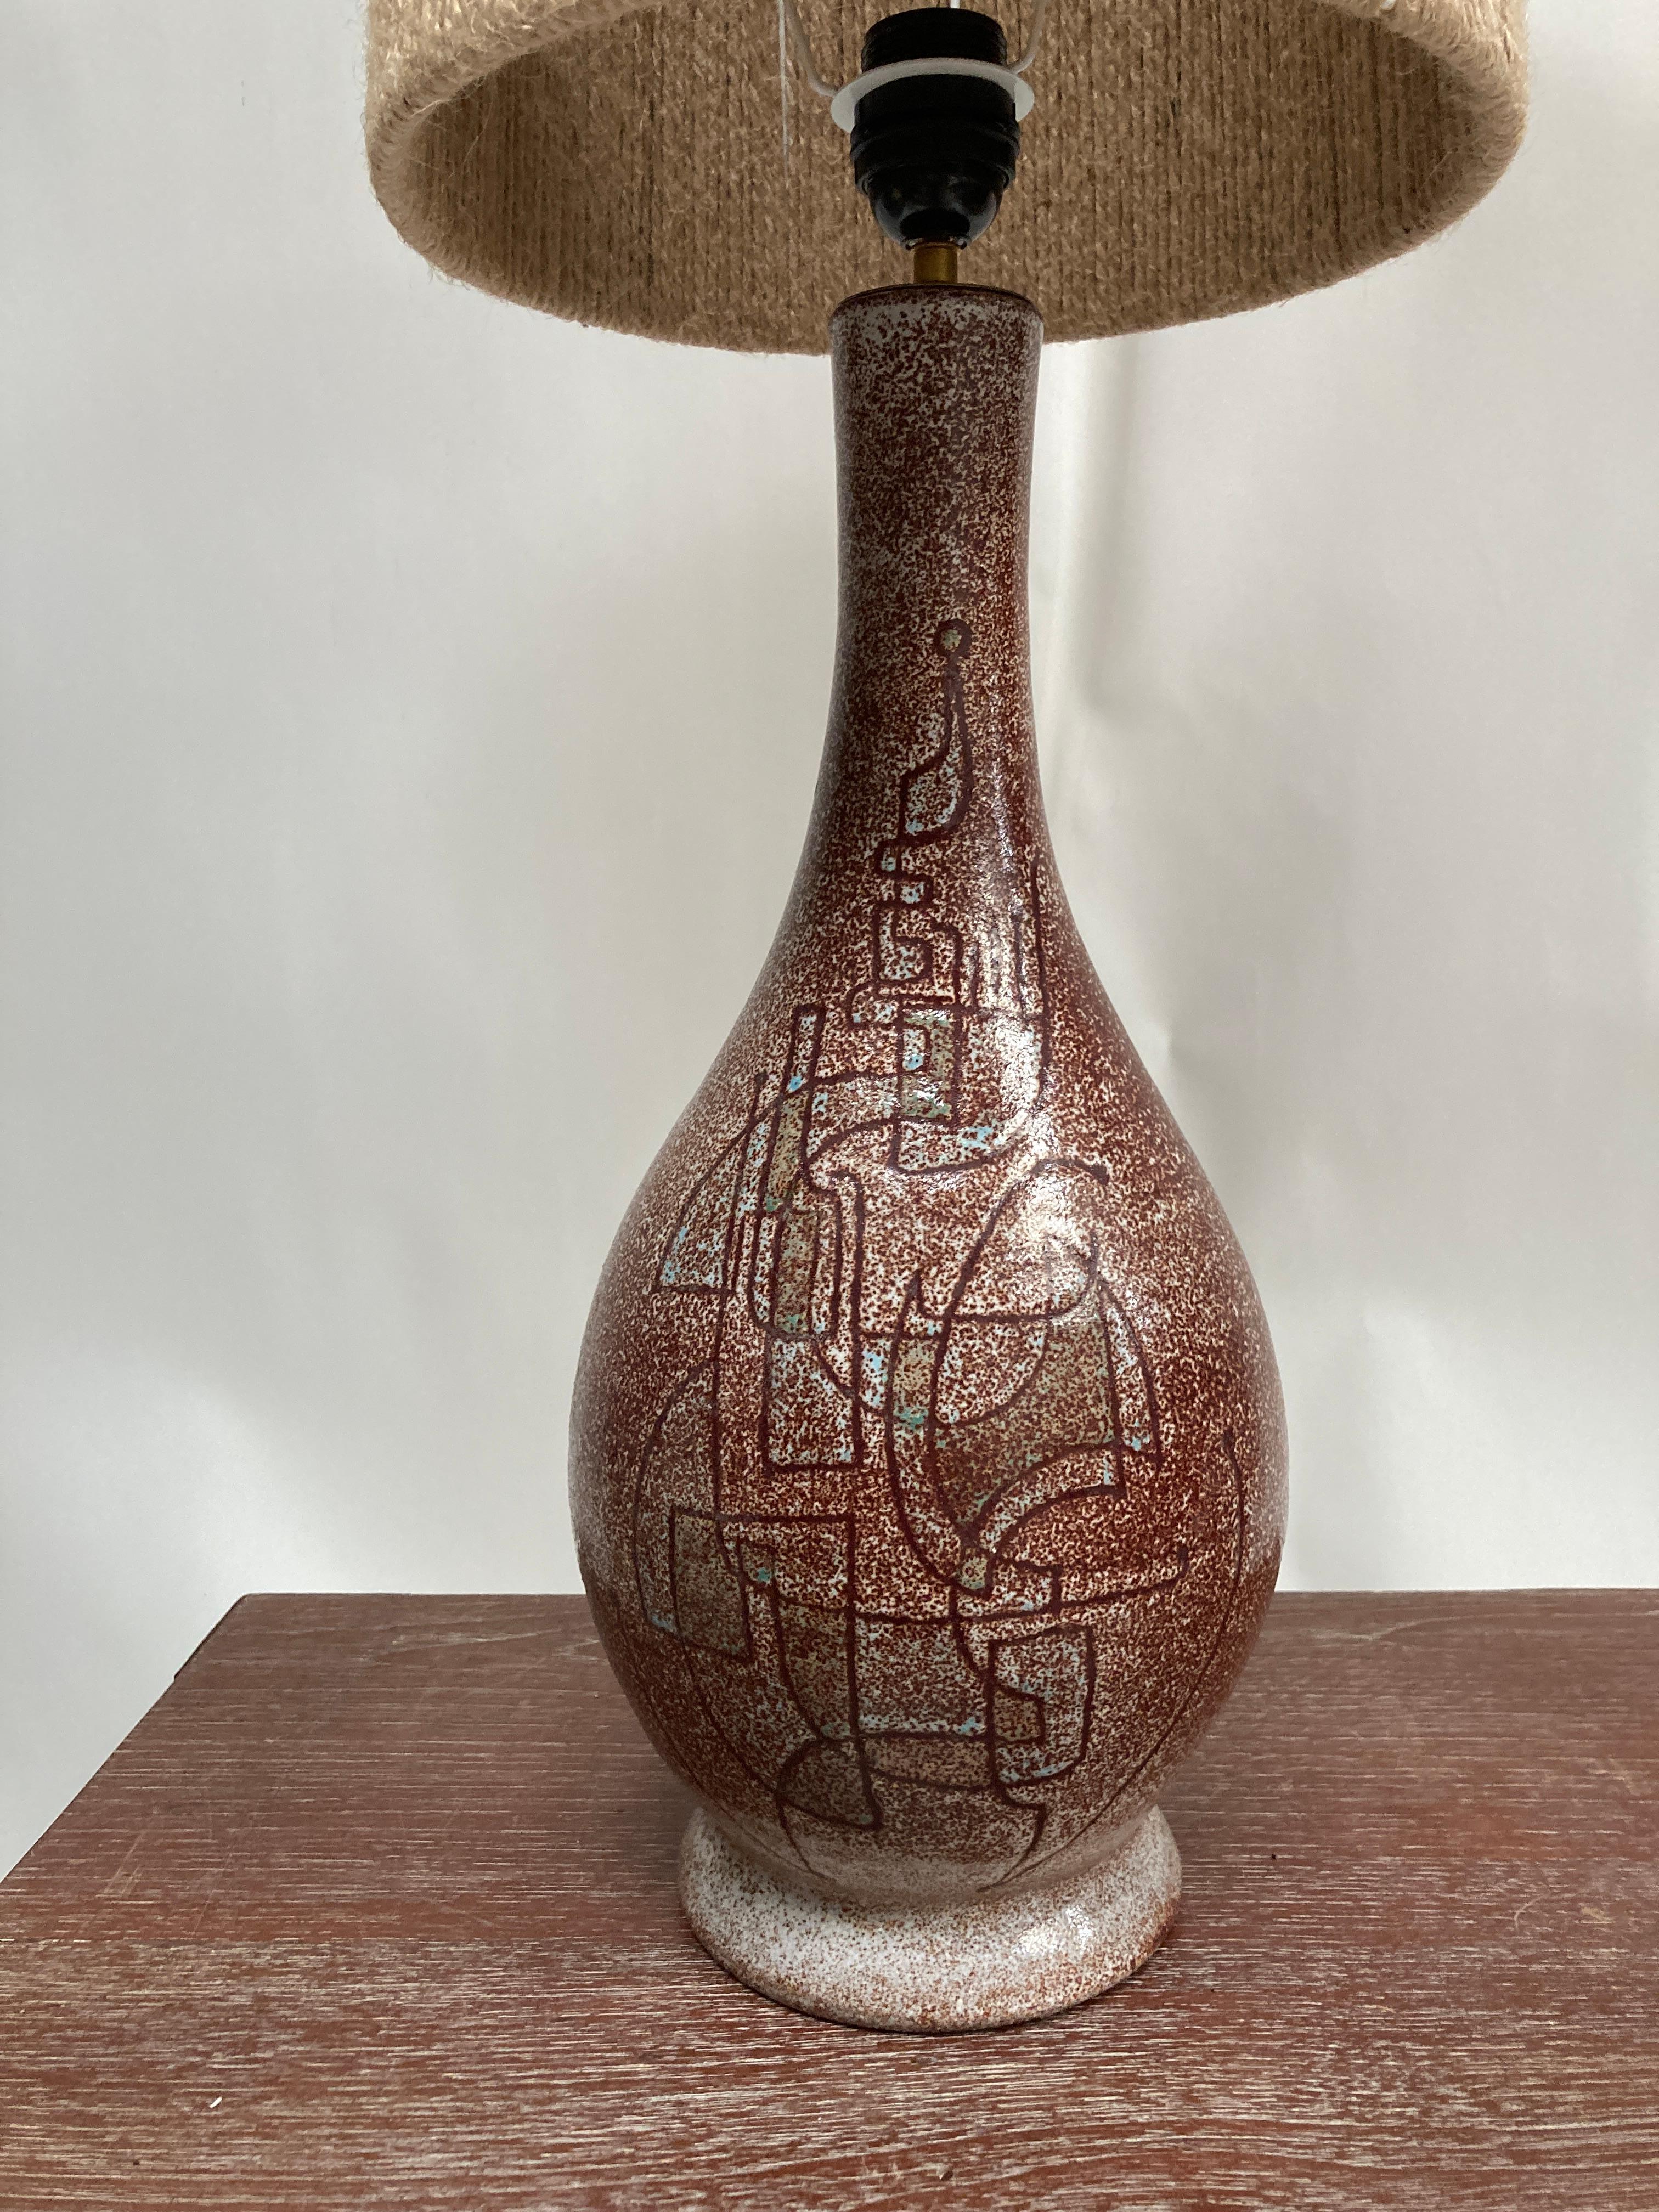 Très belle lampe en céramique de Studio pottery des années 1950 avec décoration abstraite.
France
Signé par A.C.C. Accolay